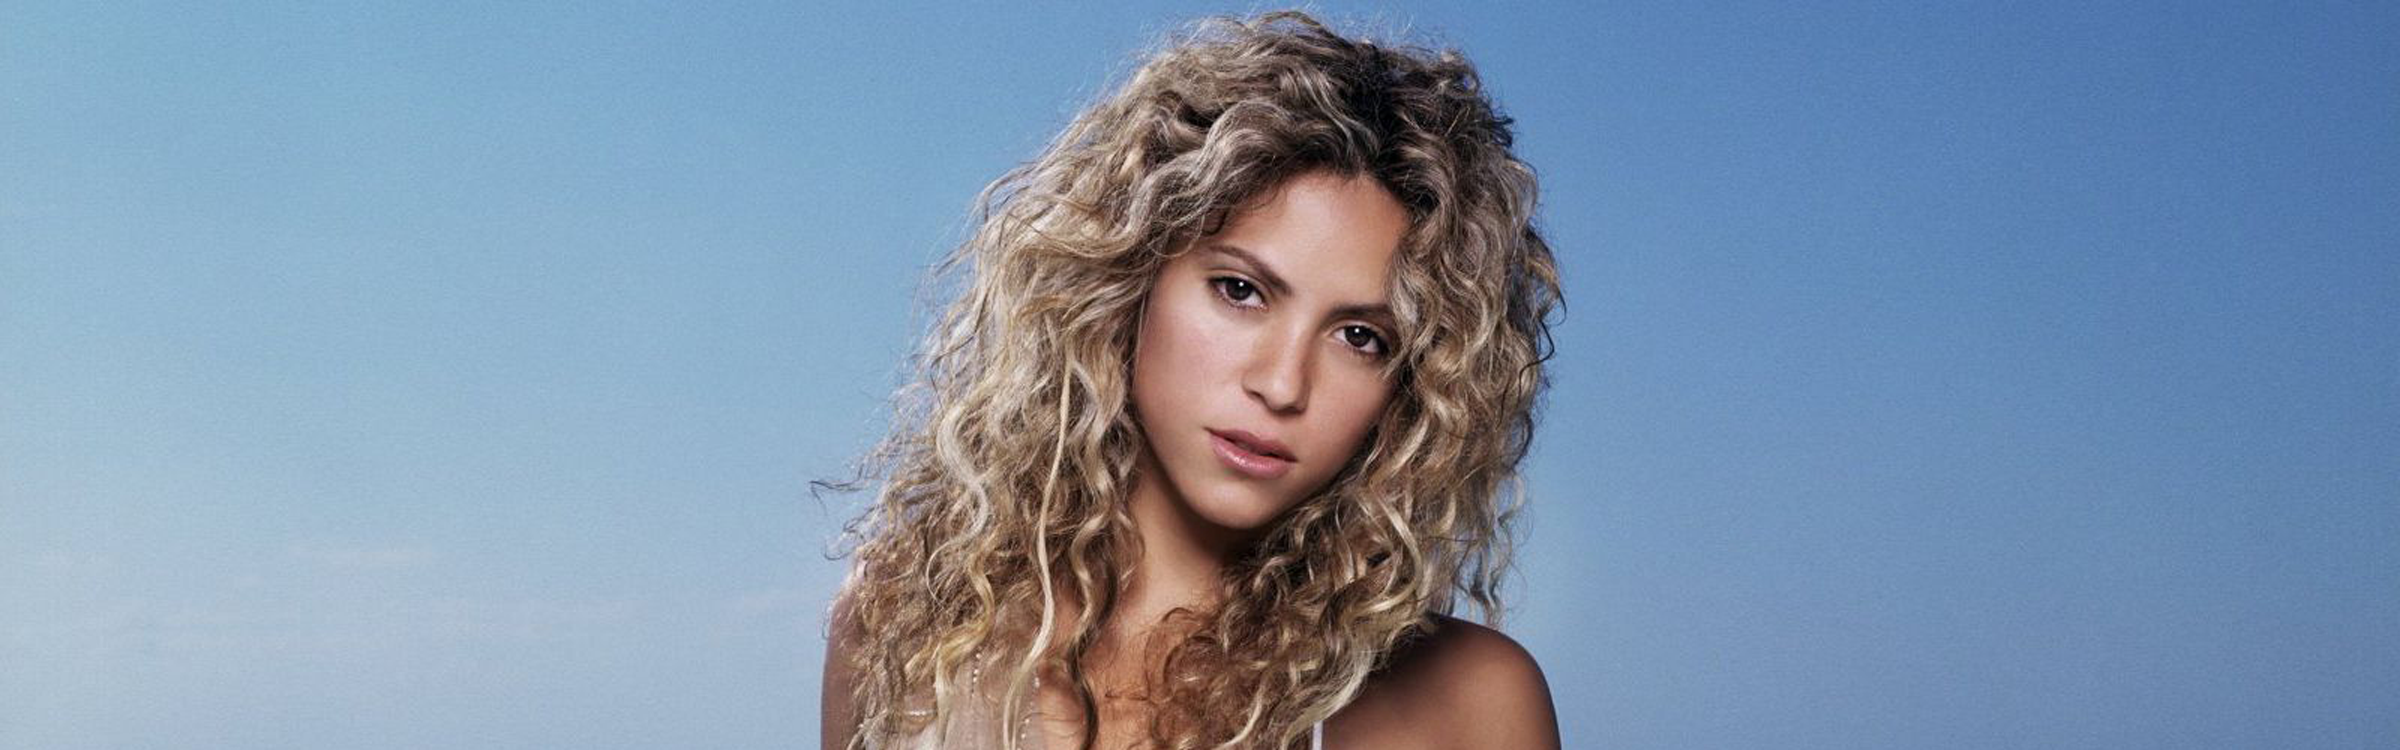 Shakira header